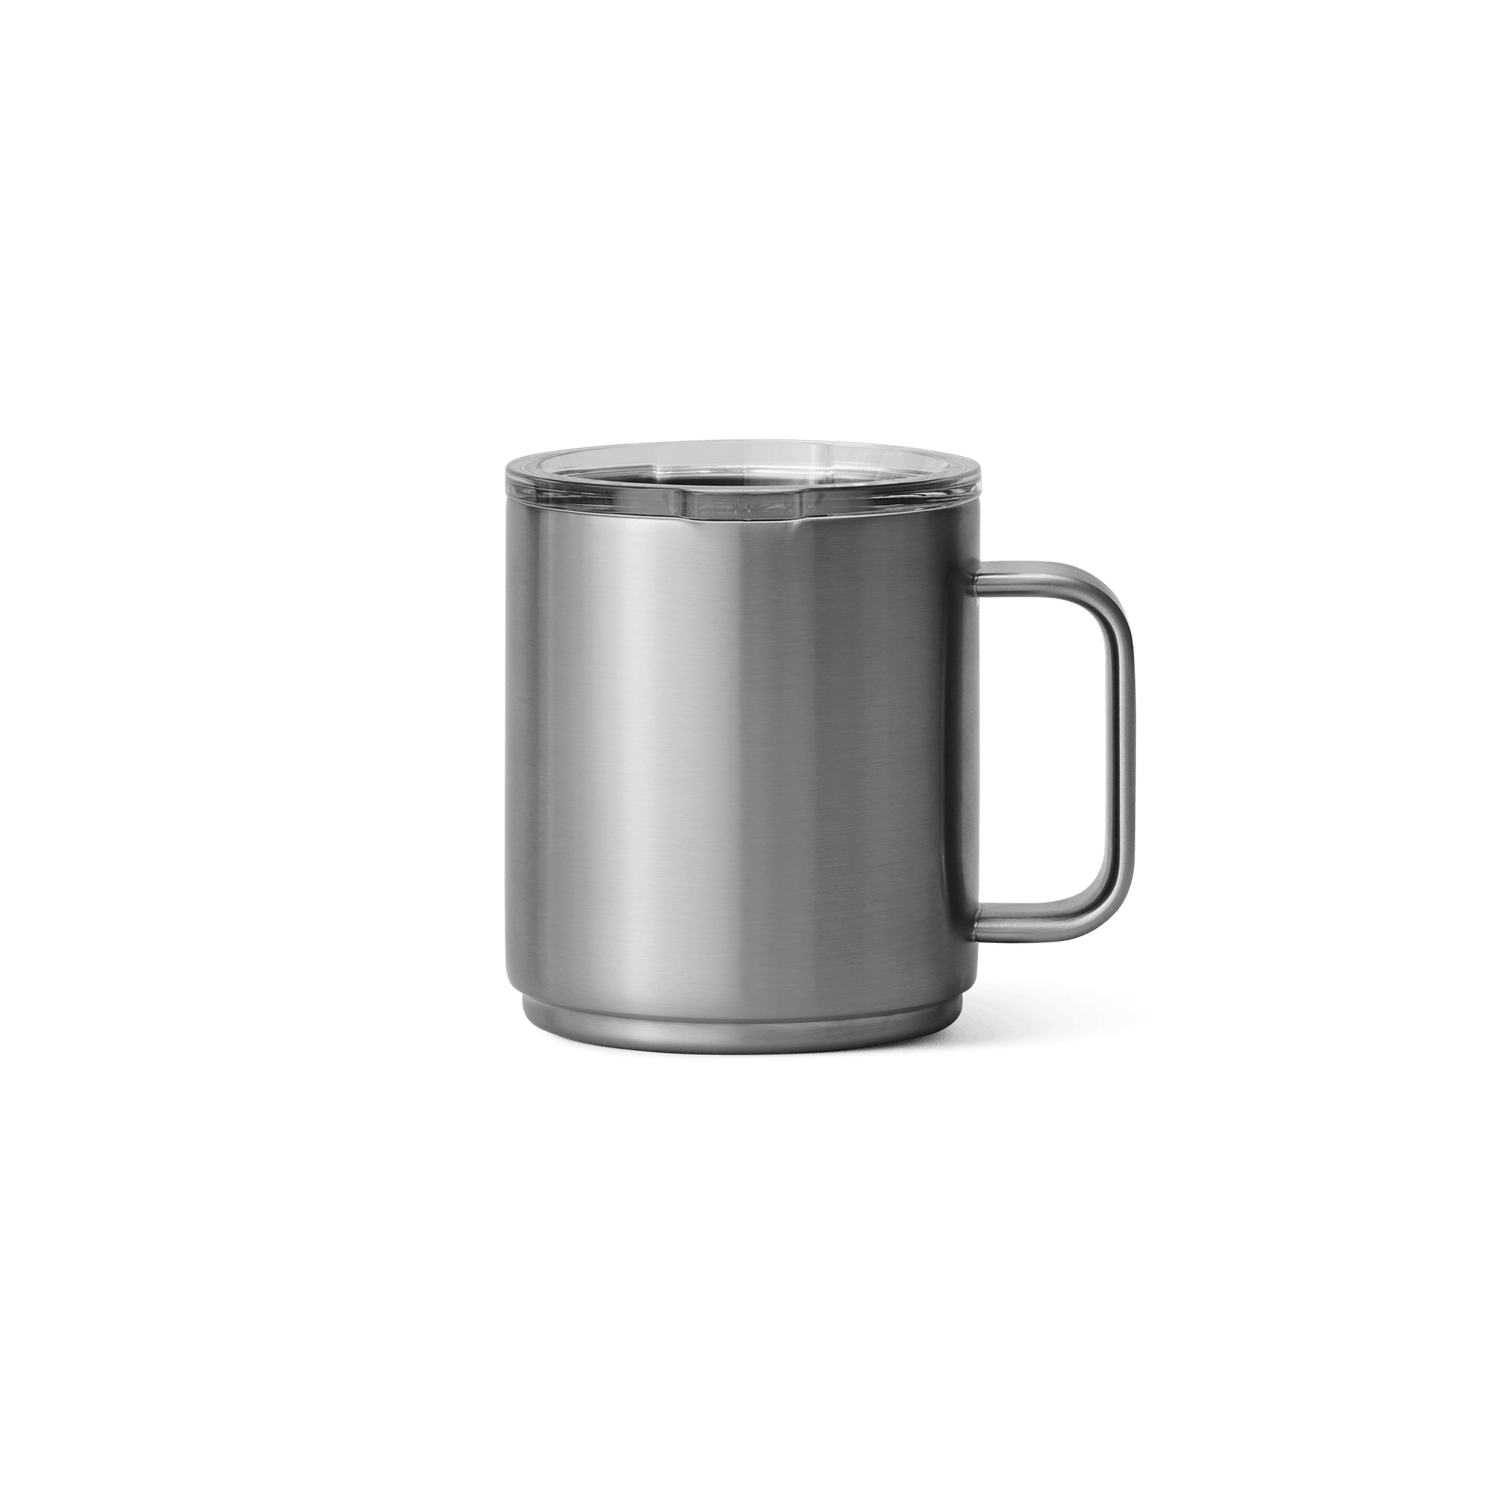 YETI® Rambler 296 ml Mug – YETI EUROPE